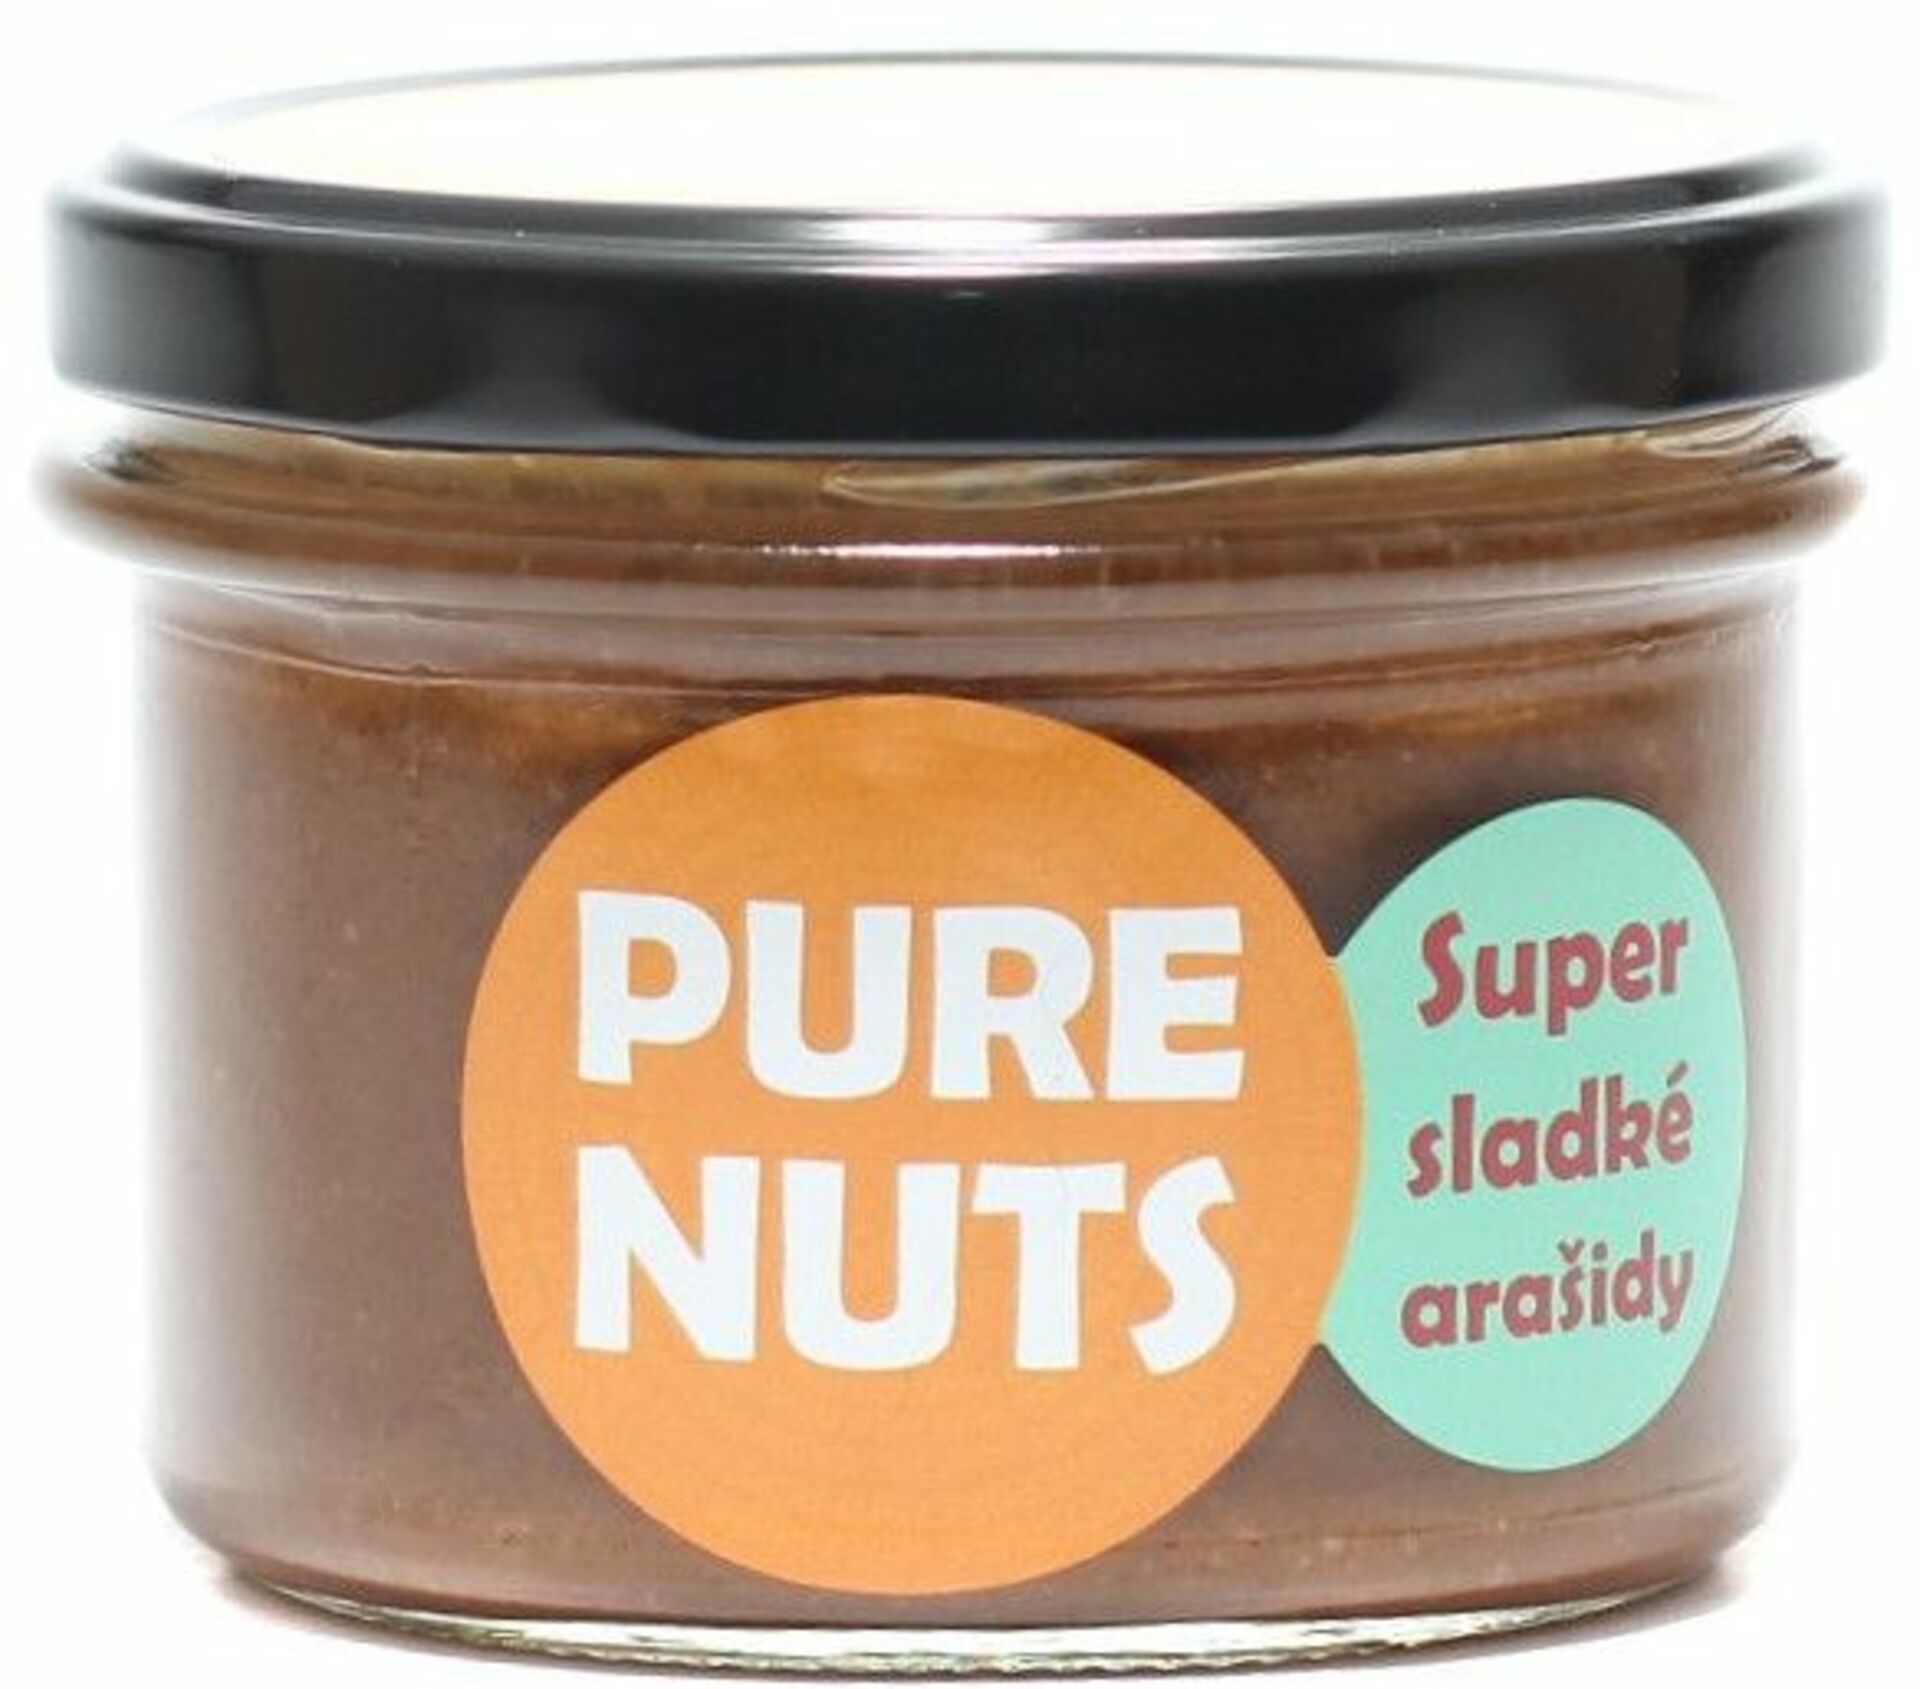 Pure Nuts Super sladké arašidy 330 g - expirace